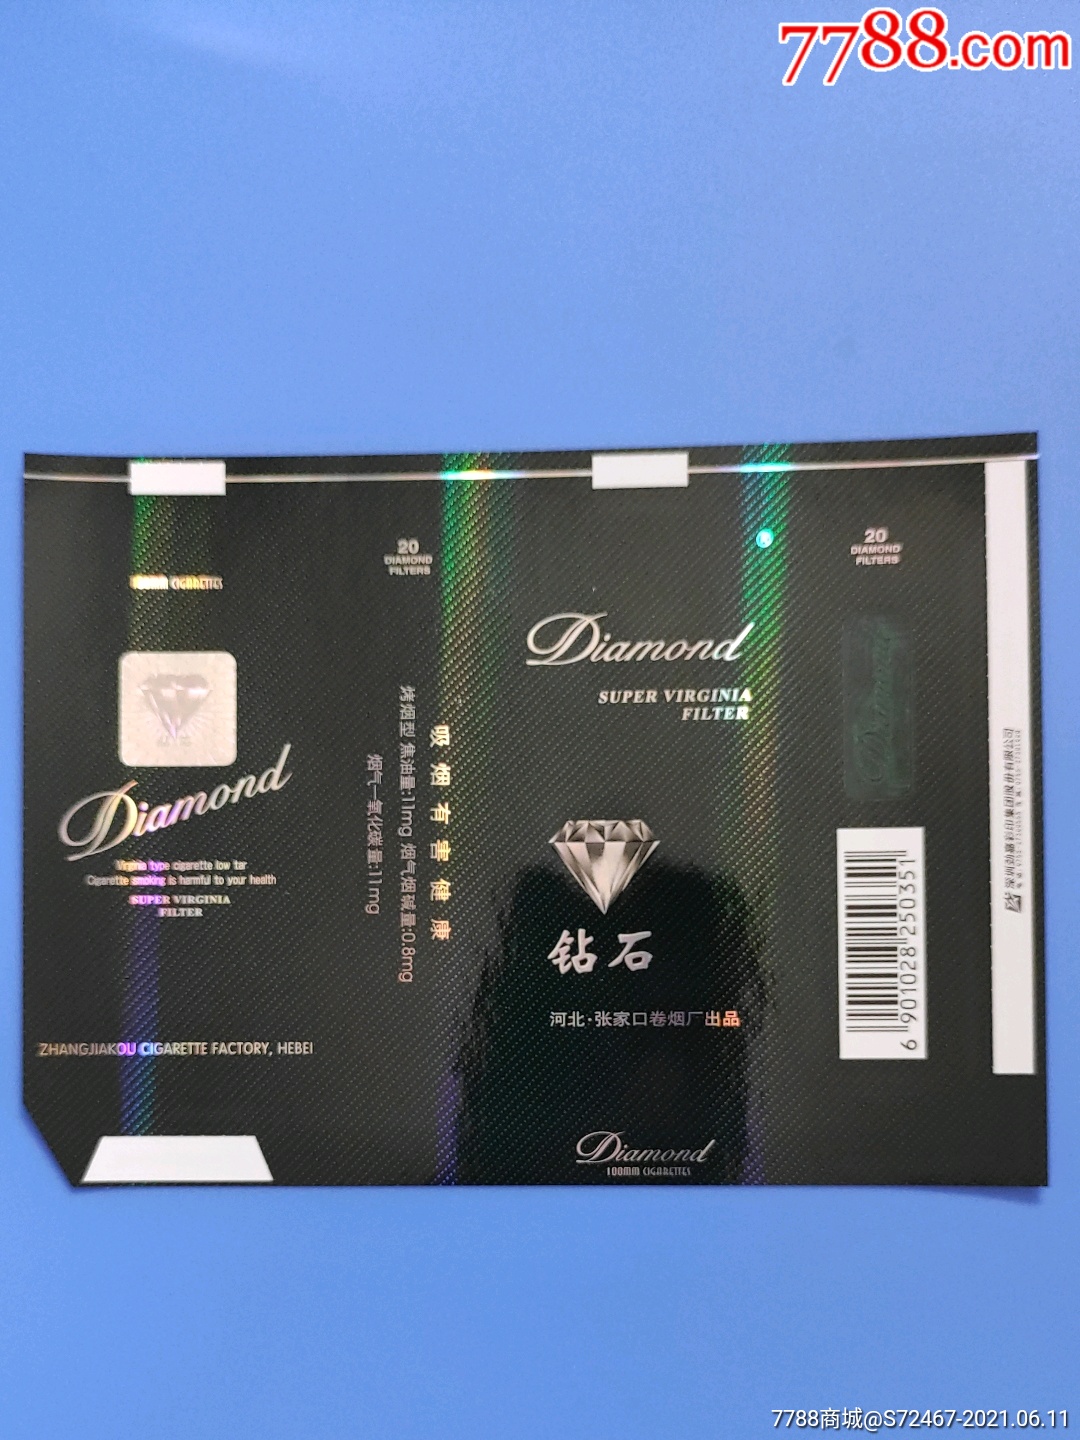 5元钻石烟蓝盒图片